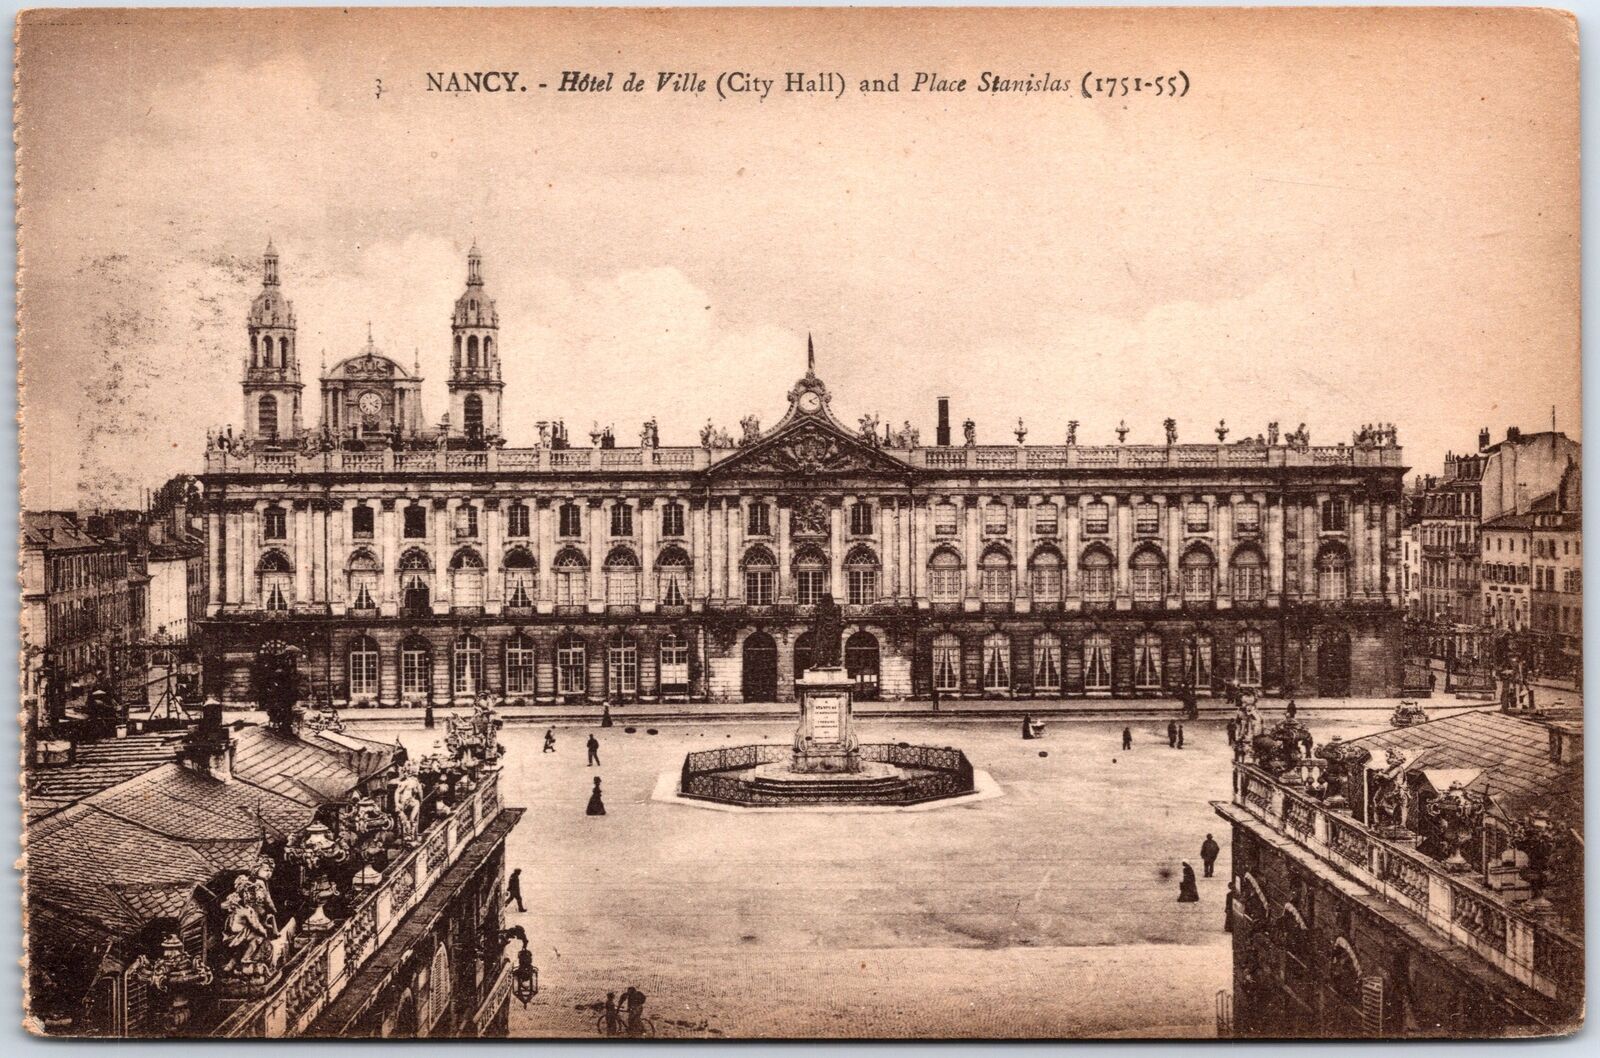 VINTAGE POSTCARD SCENE AT CITY HALL SQUARE IN NANCY FRANCE c. 1915-1928